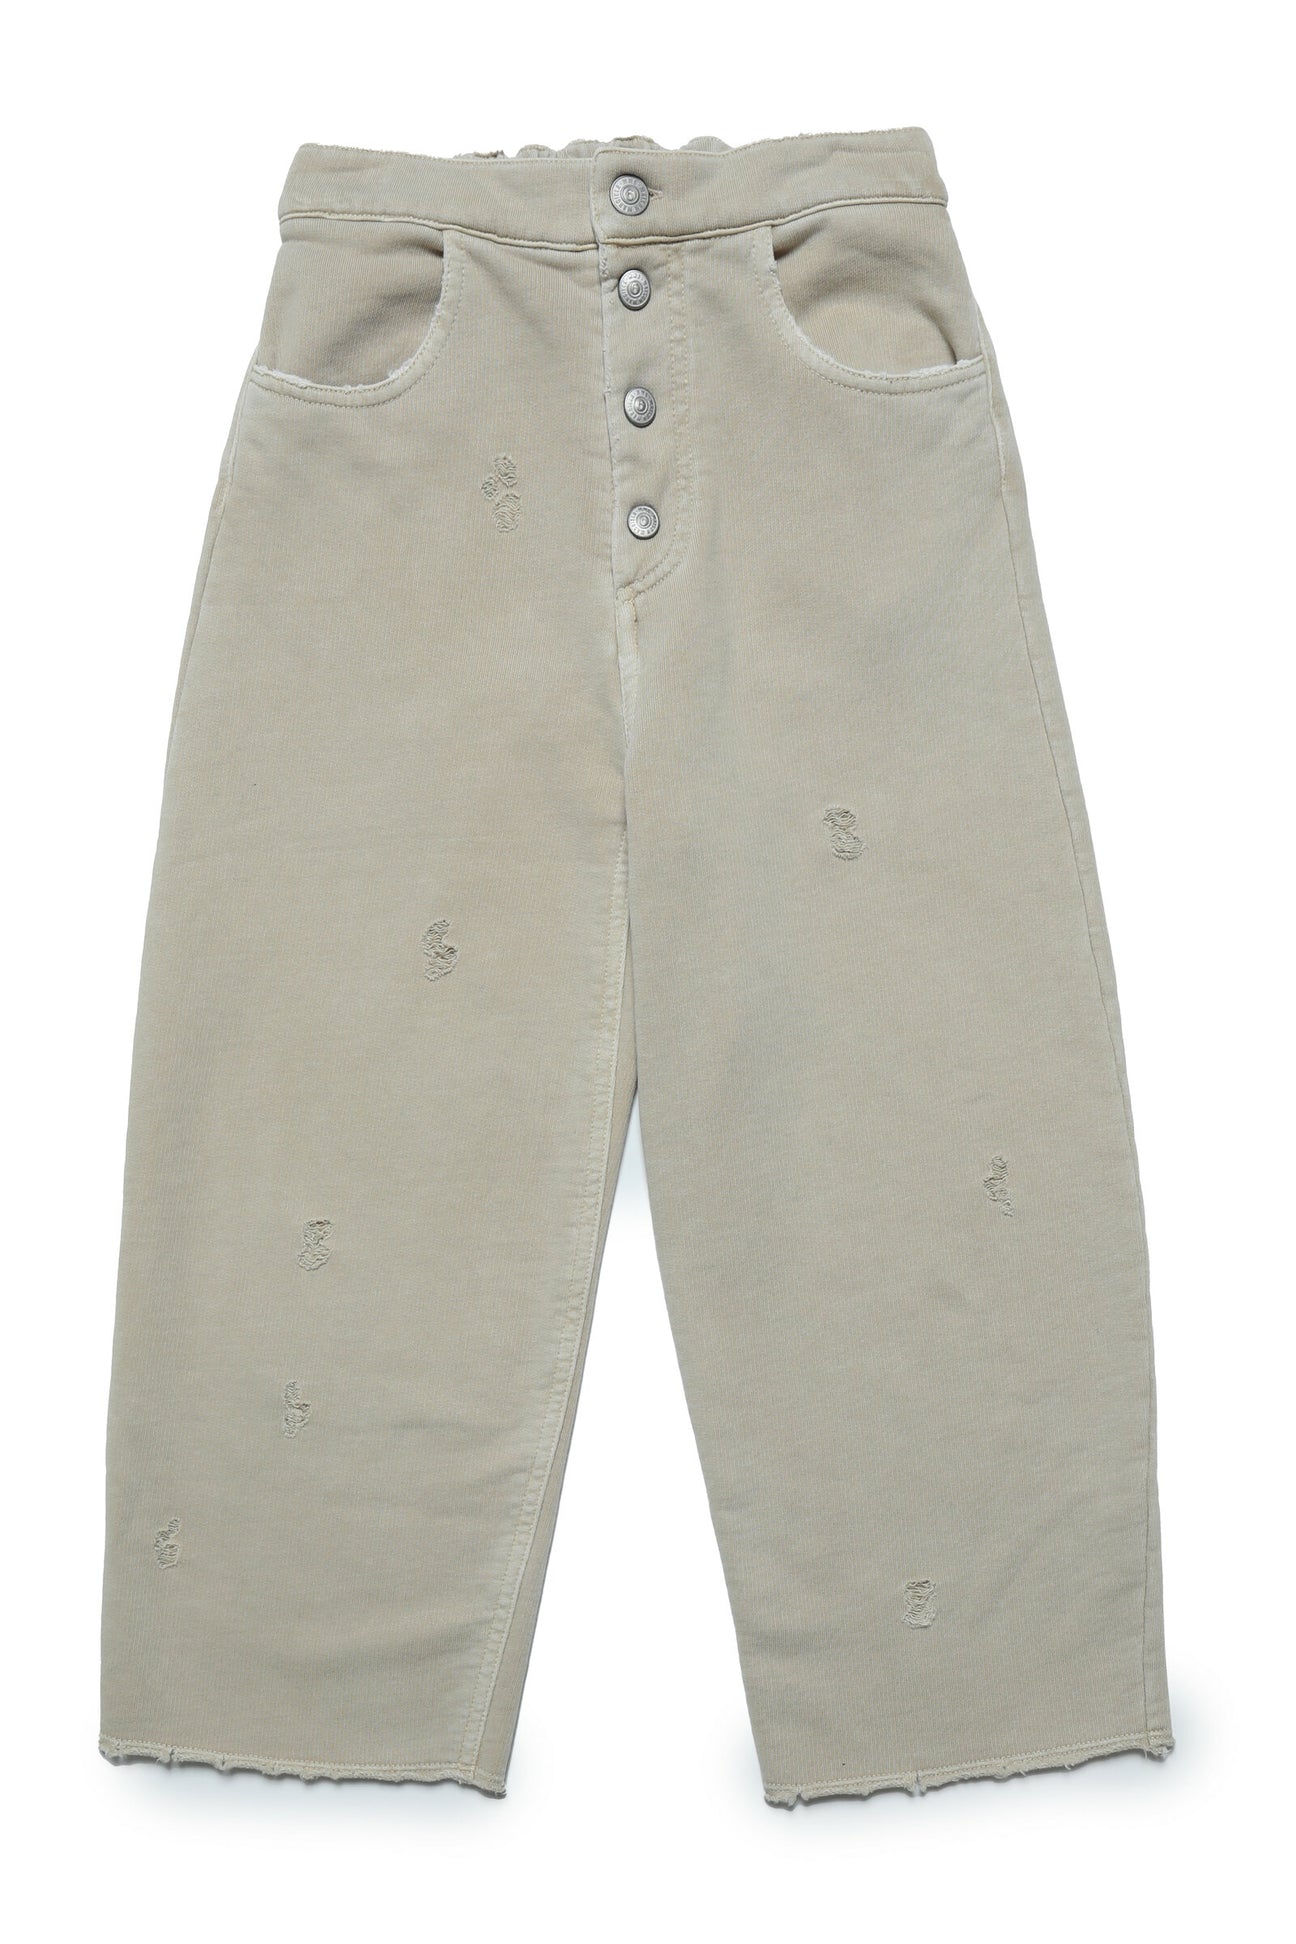 Pantalones de 5 bolsillos en felpa con rotos de efecto vintage 